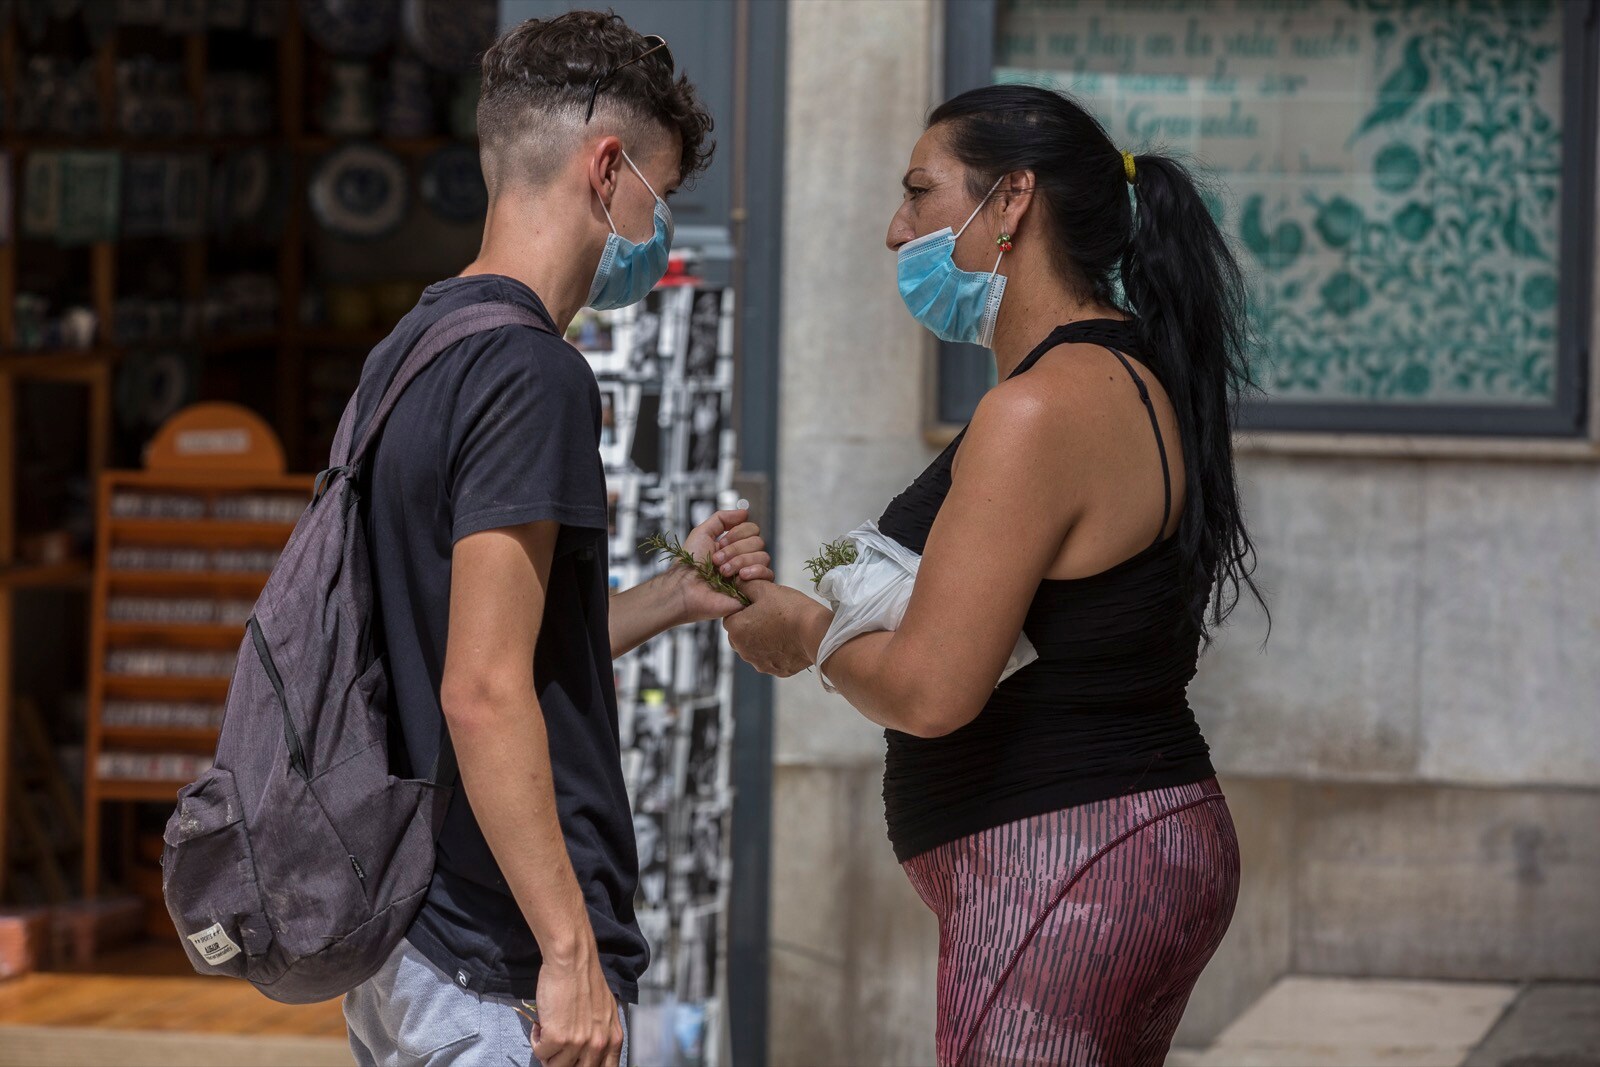 El primer día de agosto deja imágenes de turistas visitando los principales puntos de la ciudad pese a la ola de calor y a la incertidumbre por los rebrotes de coronavirus